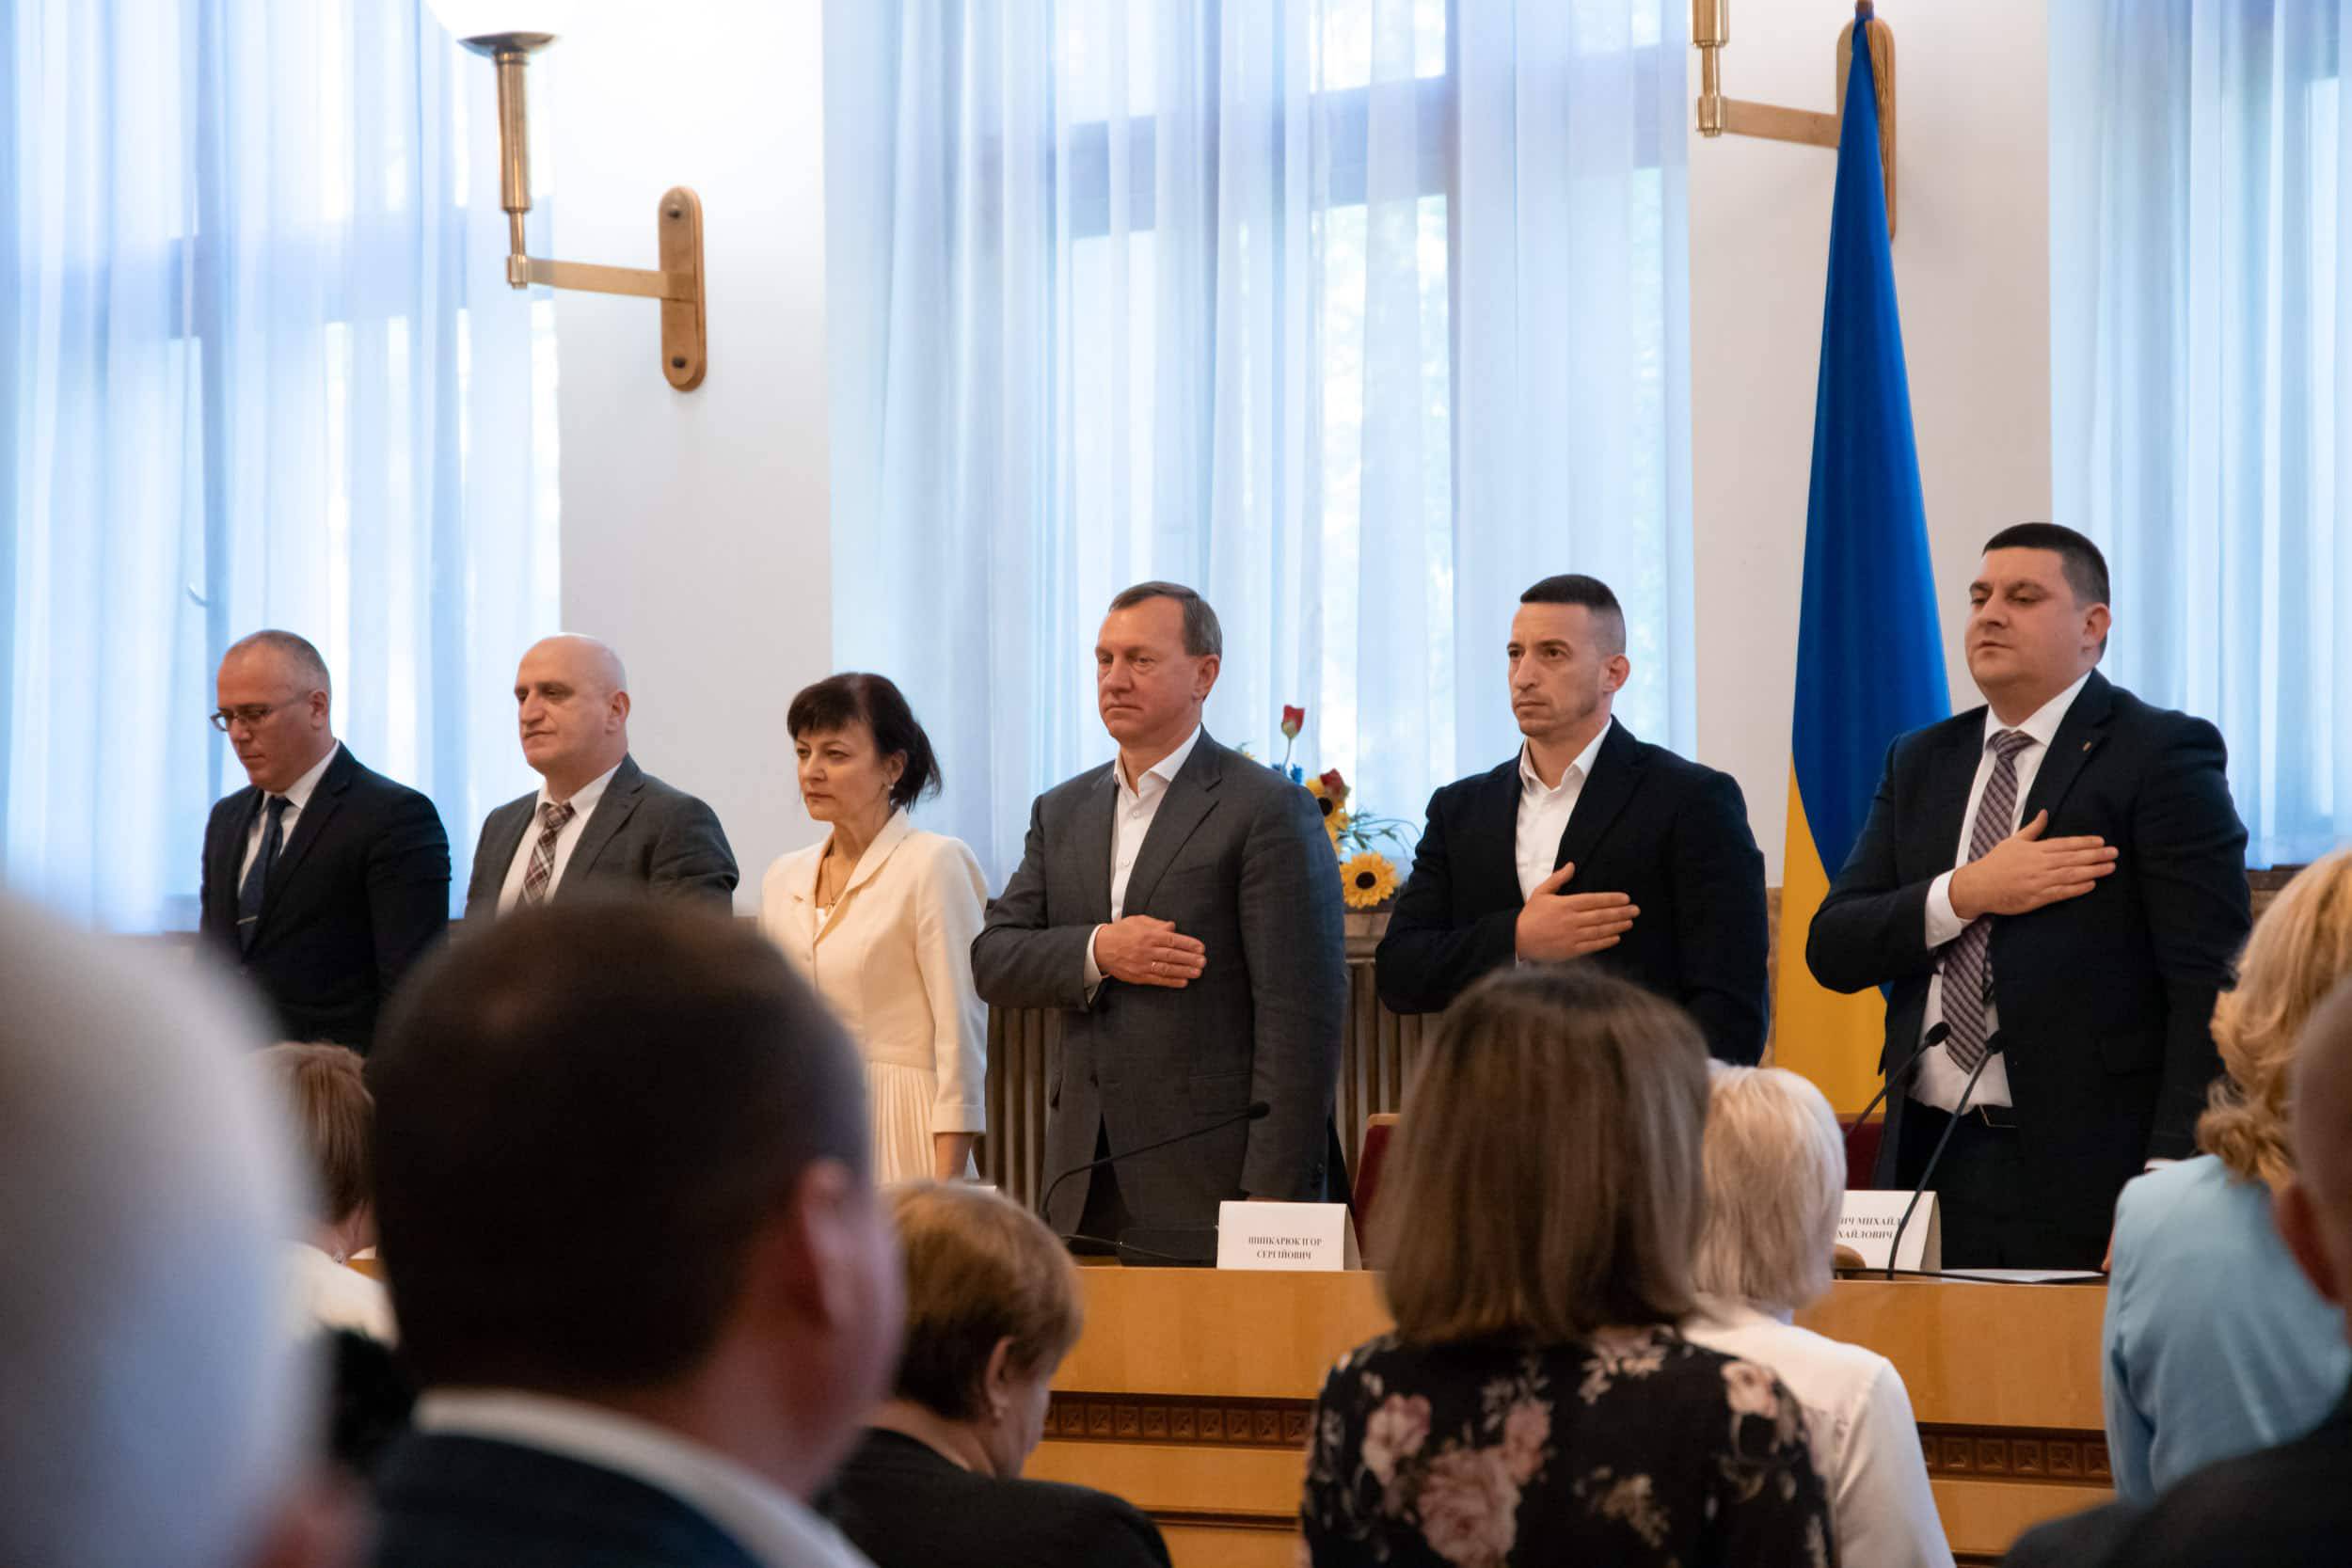 Міський голова Богдан Андріїв долучився до привітань юристам краю із професійним святом 